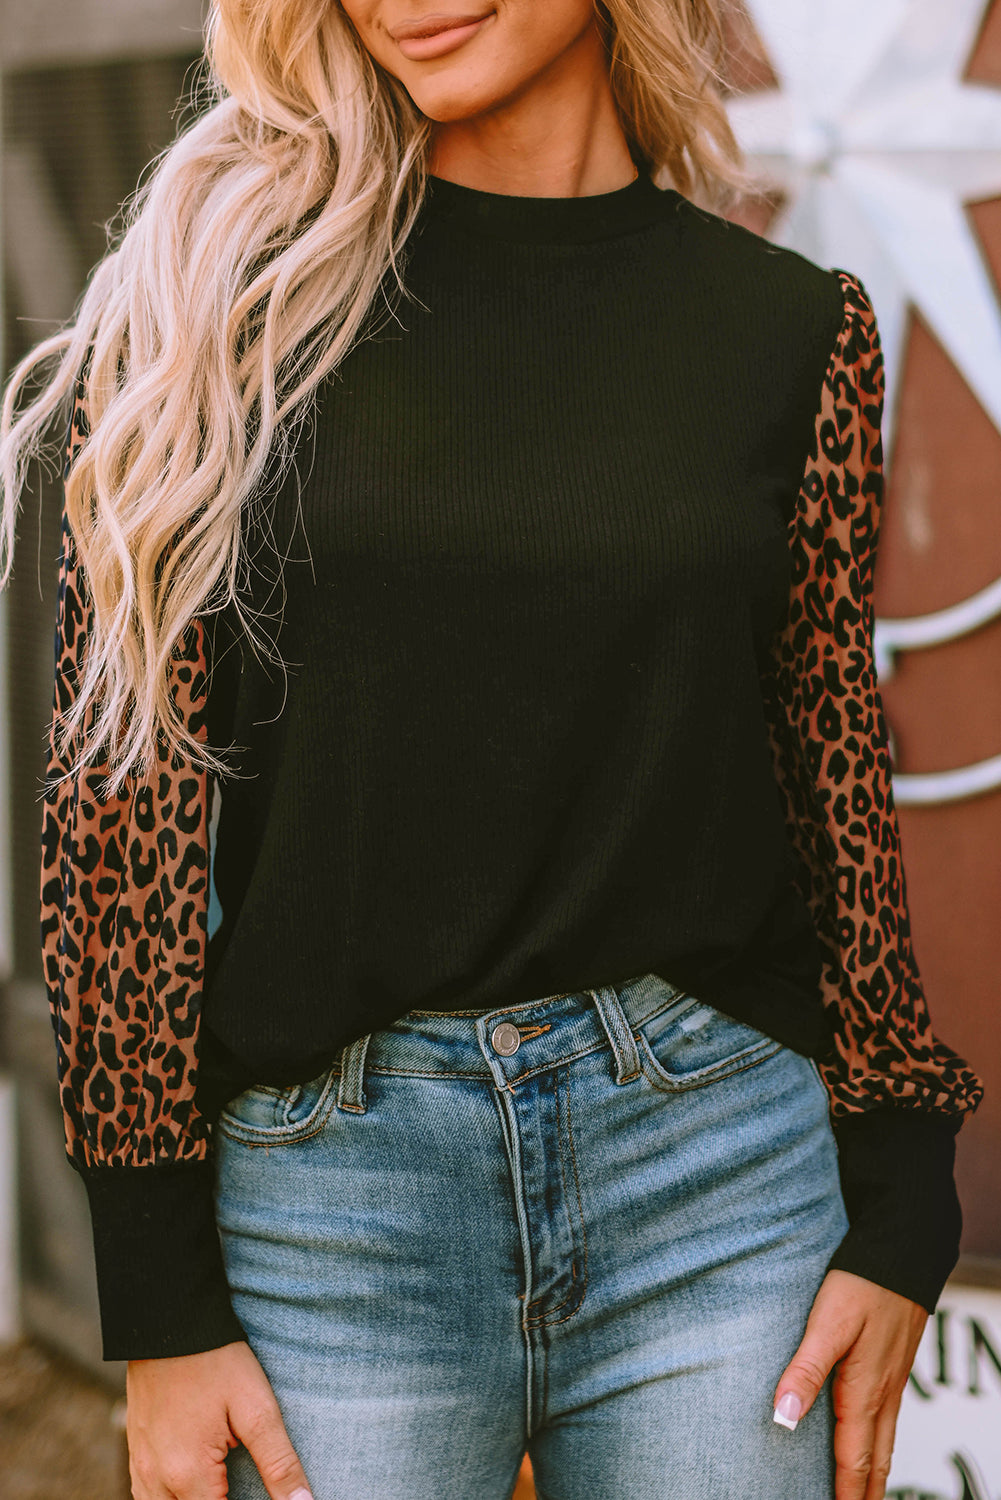 Rebrasta pletena bluza dugih rukava s uzorkom leoparda boje marelice